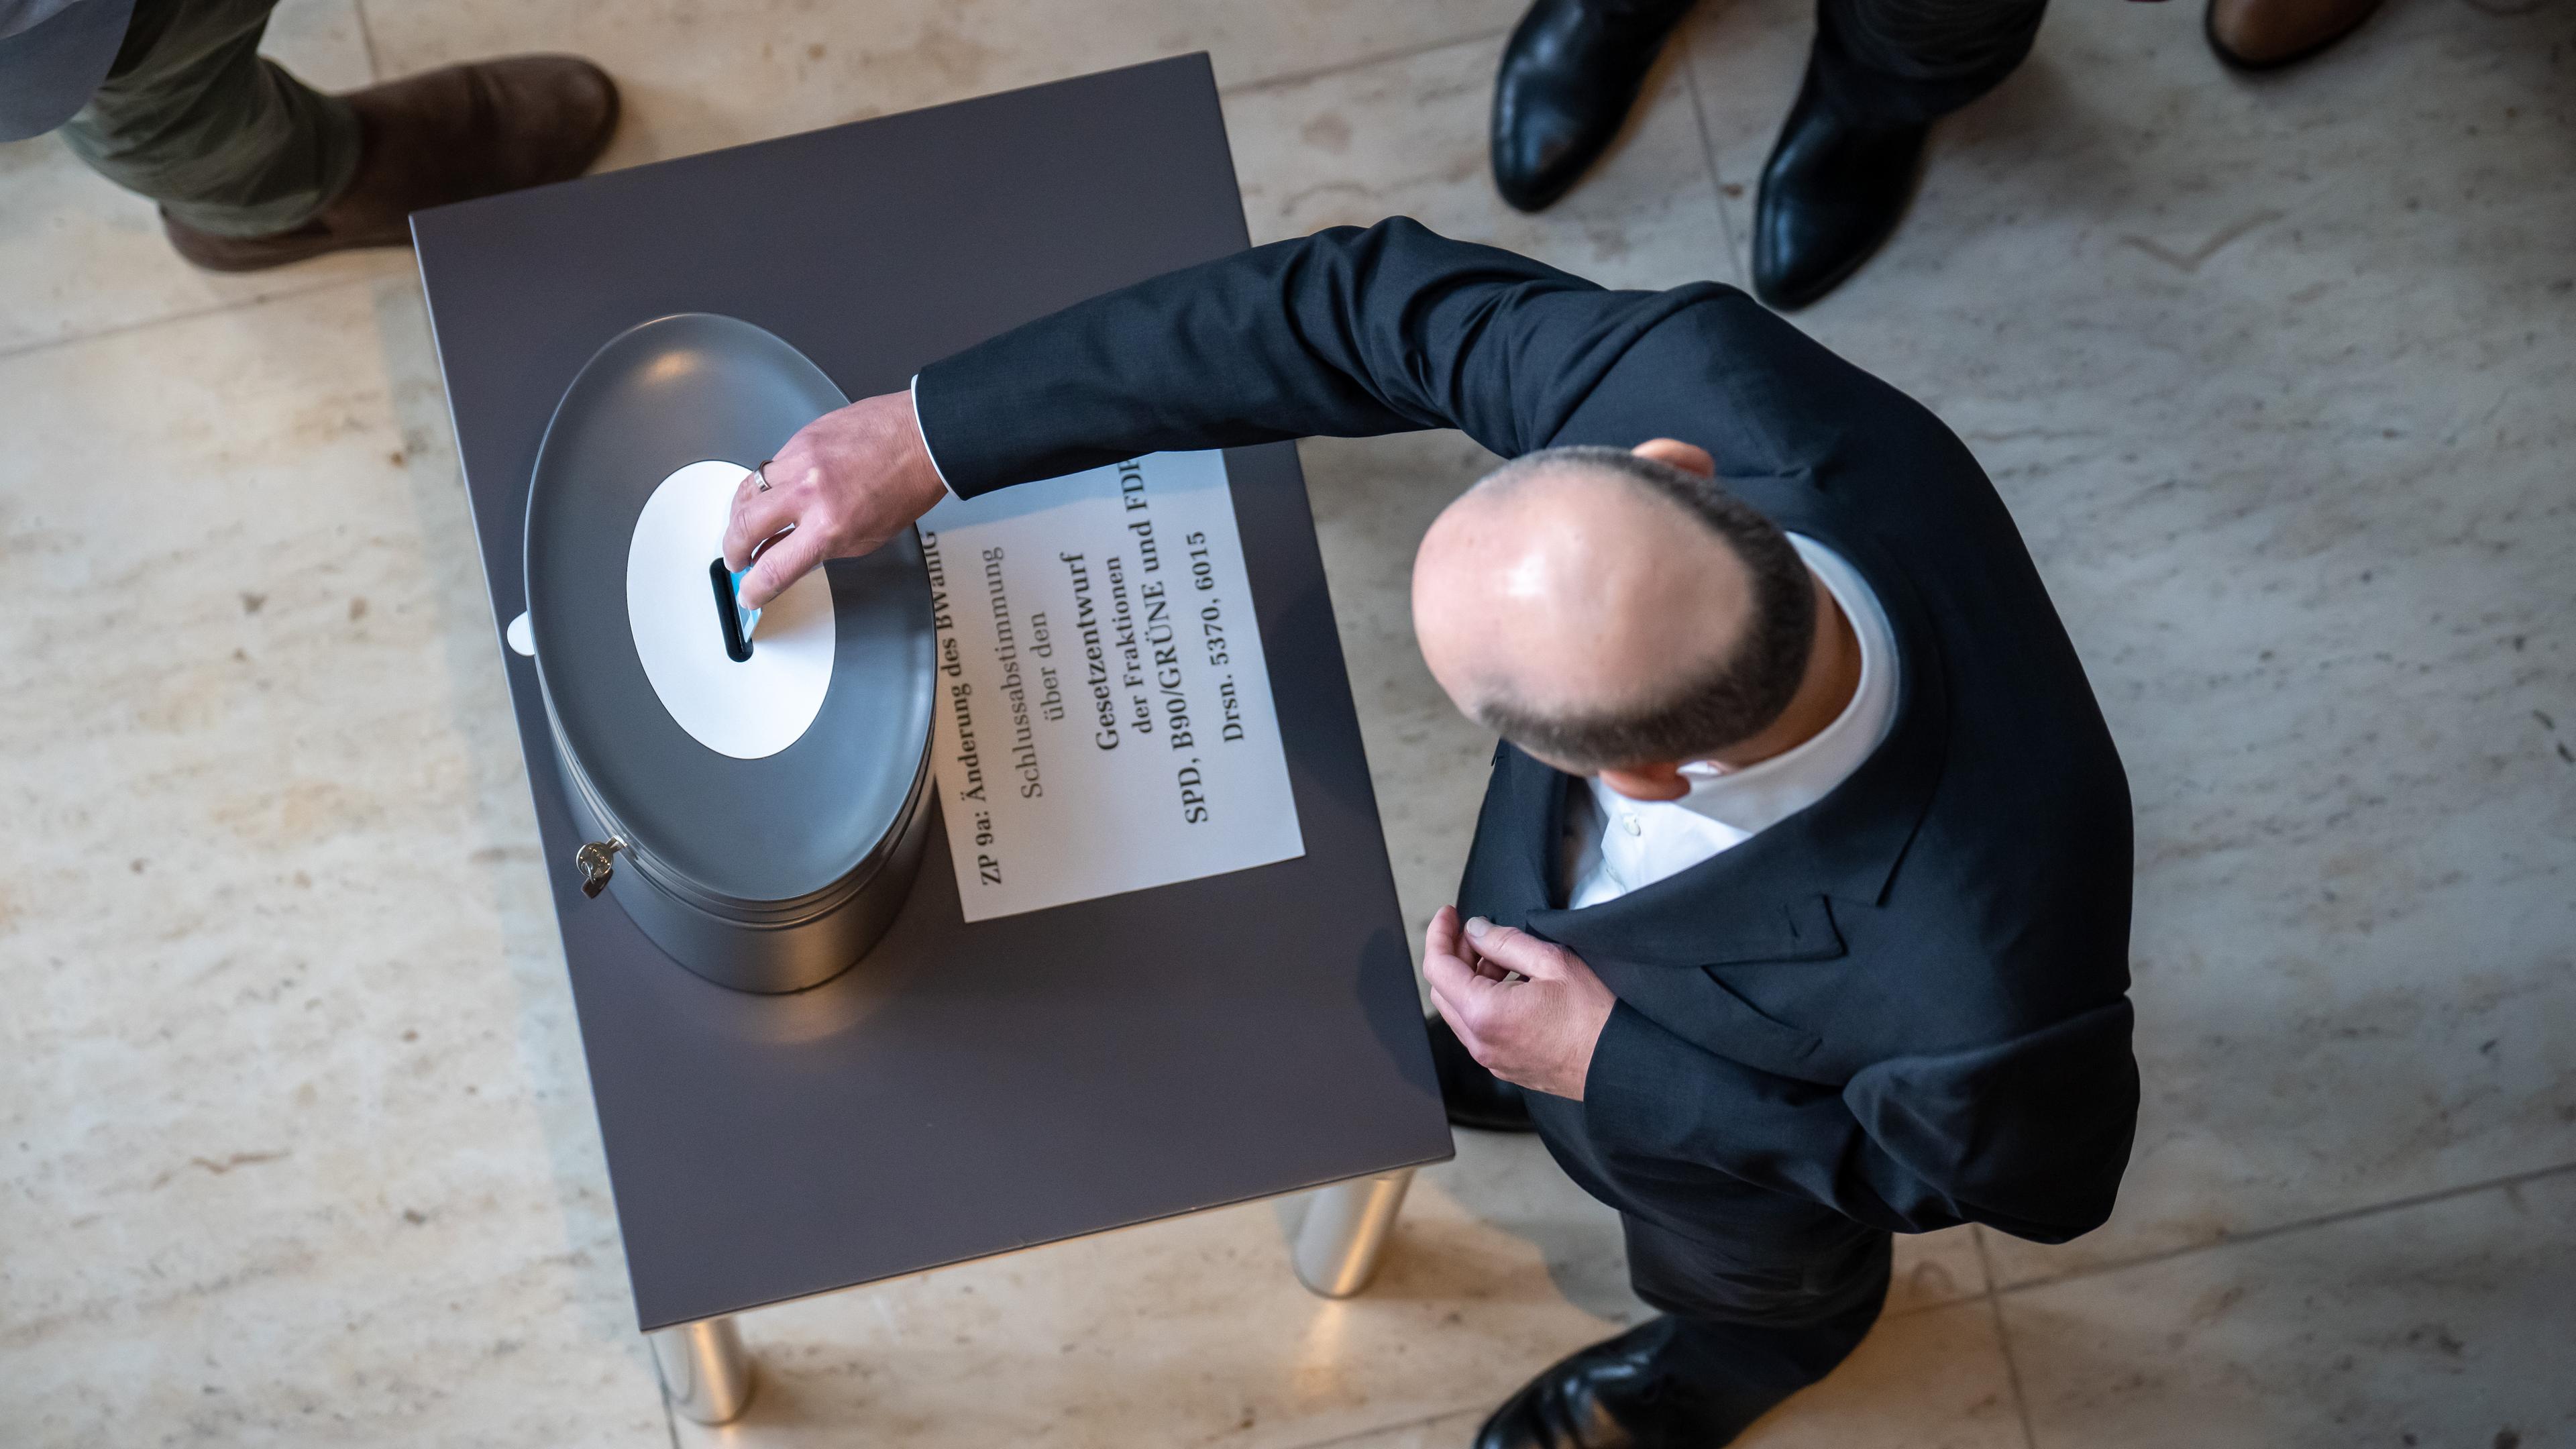 Bundeskanzler Olaf Scholz (SPD), wirft seine Stimmkarte bei der namentlichen Abstimmung im Bundestag